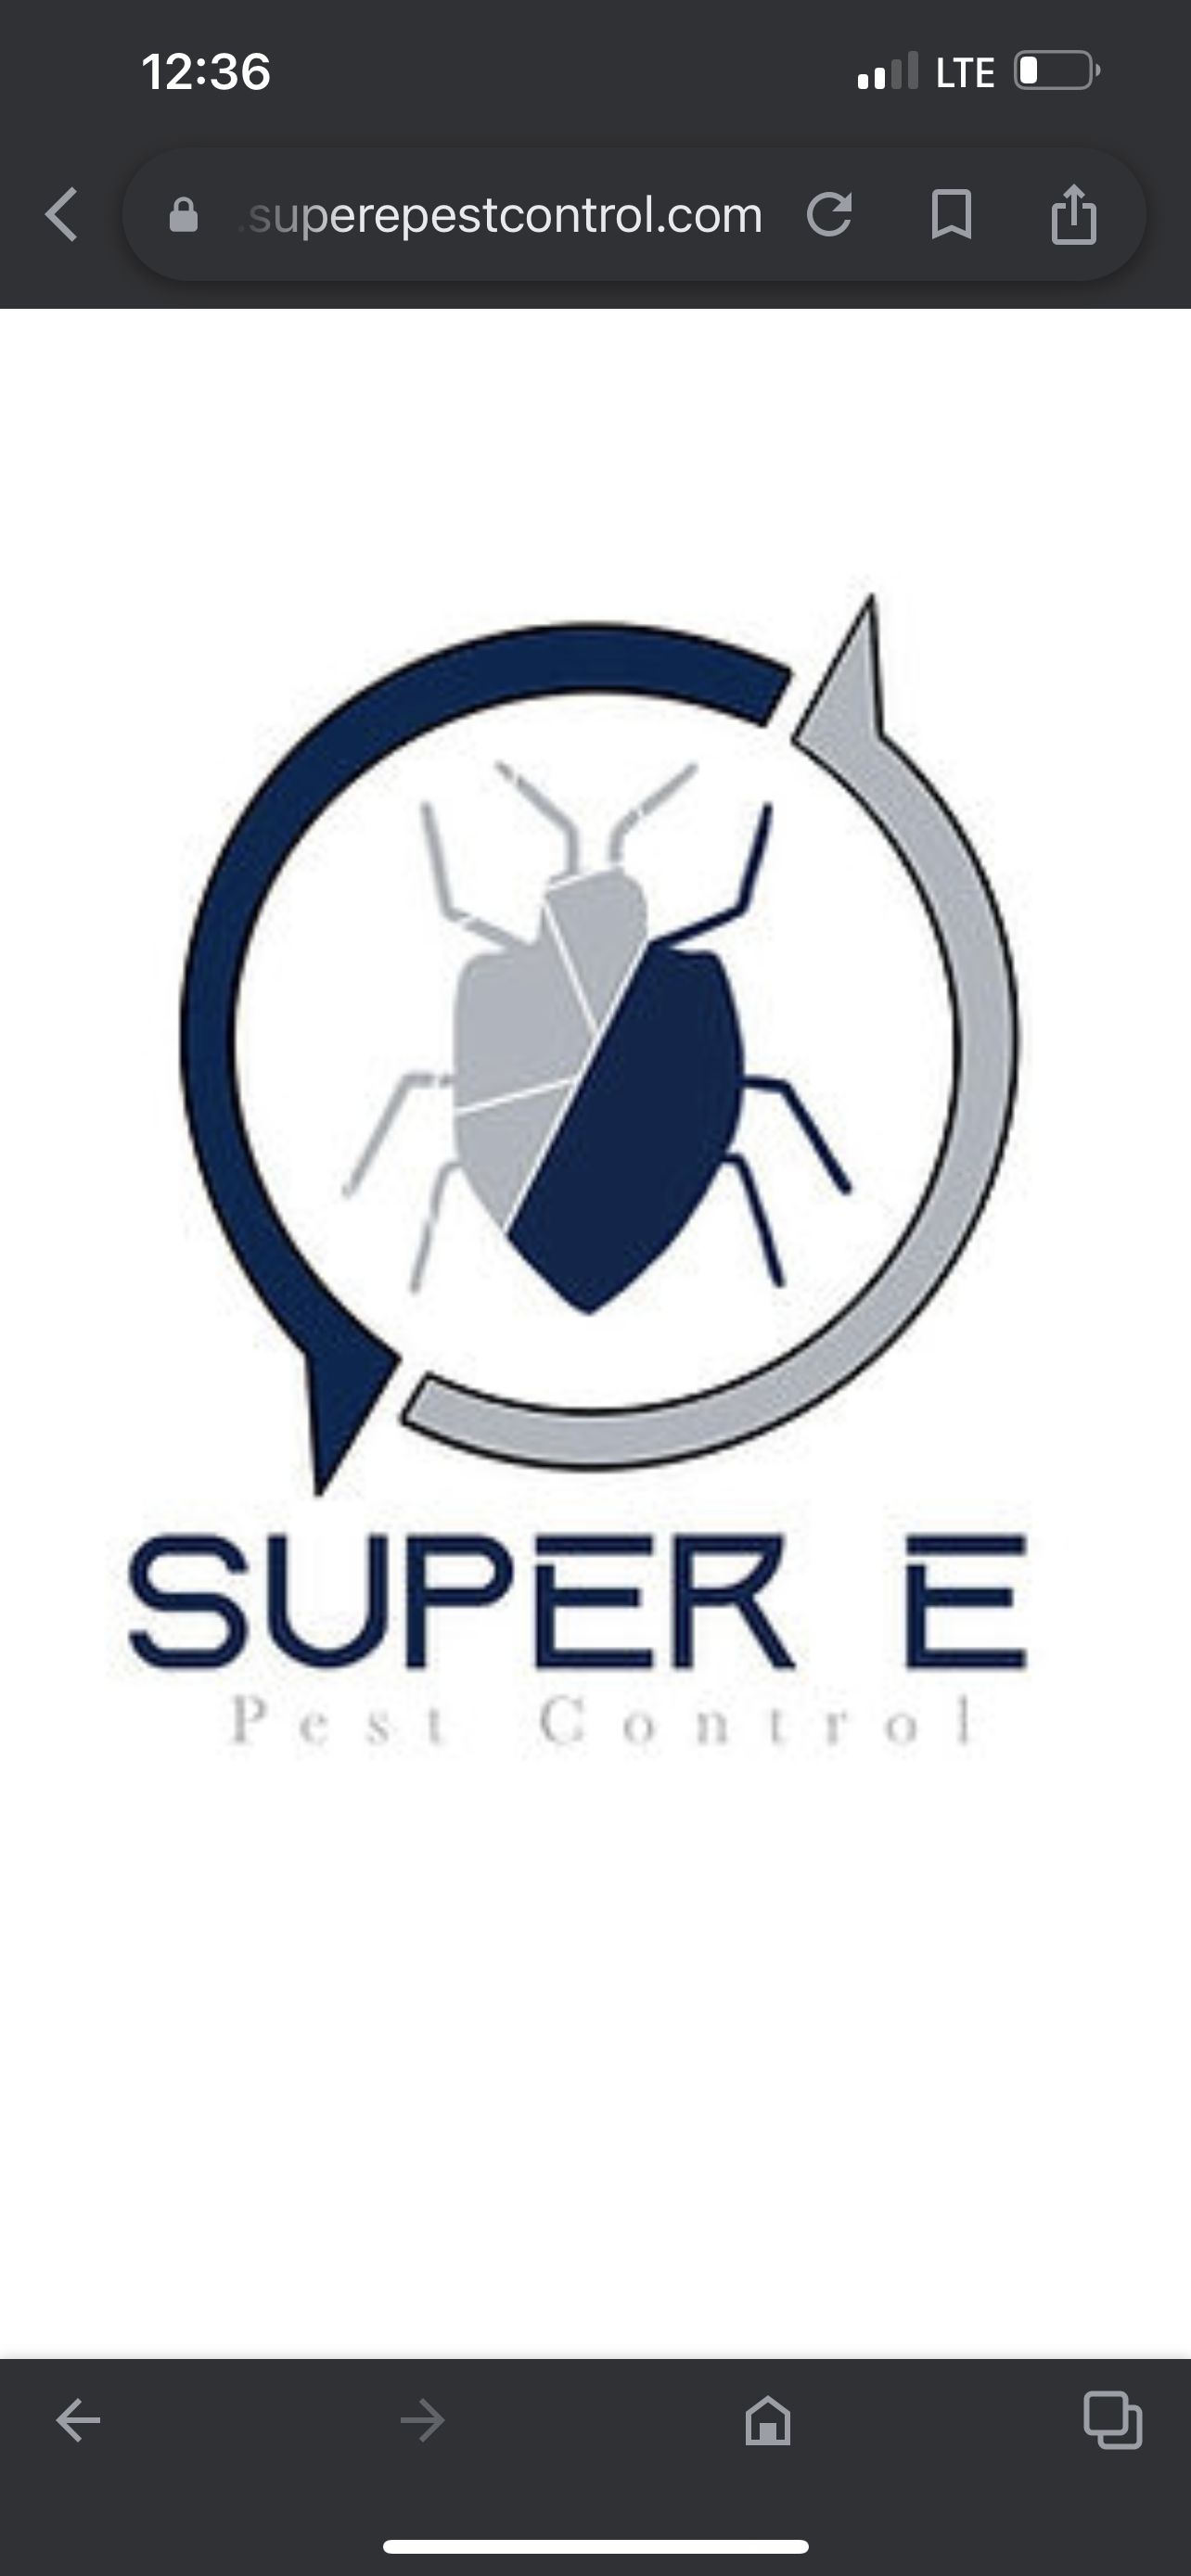 Super E Pest Control Logo